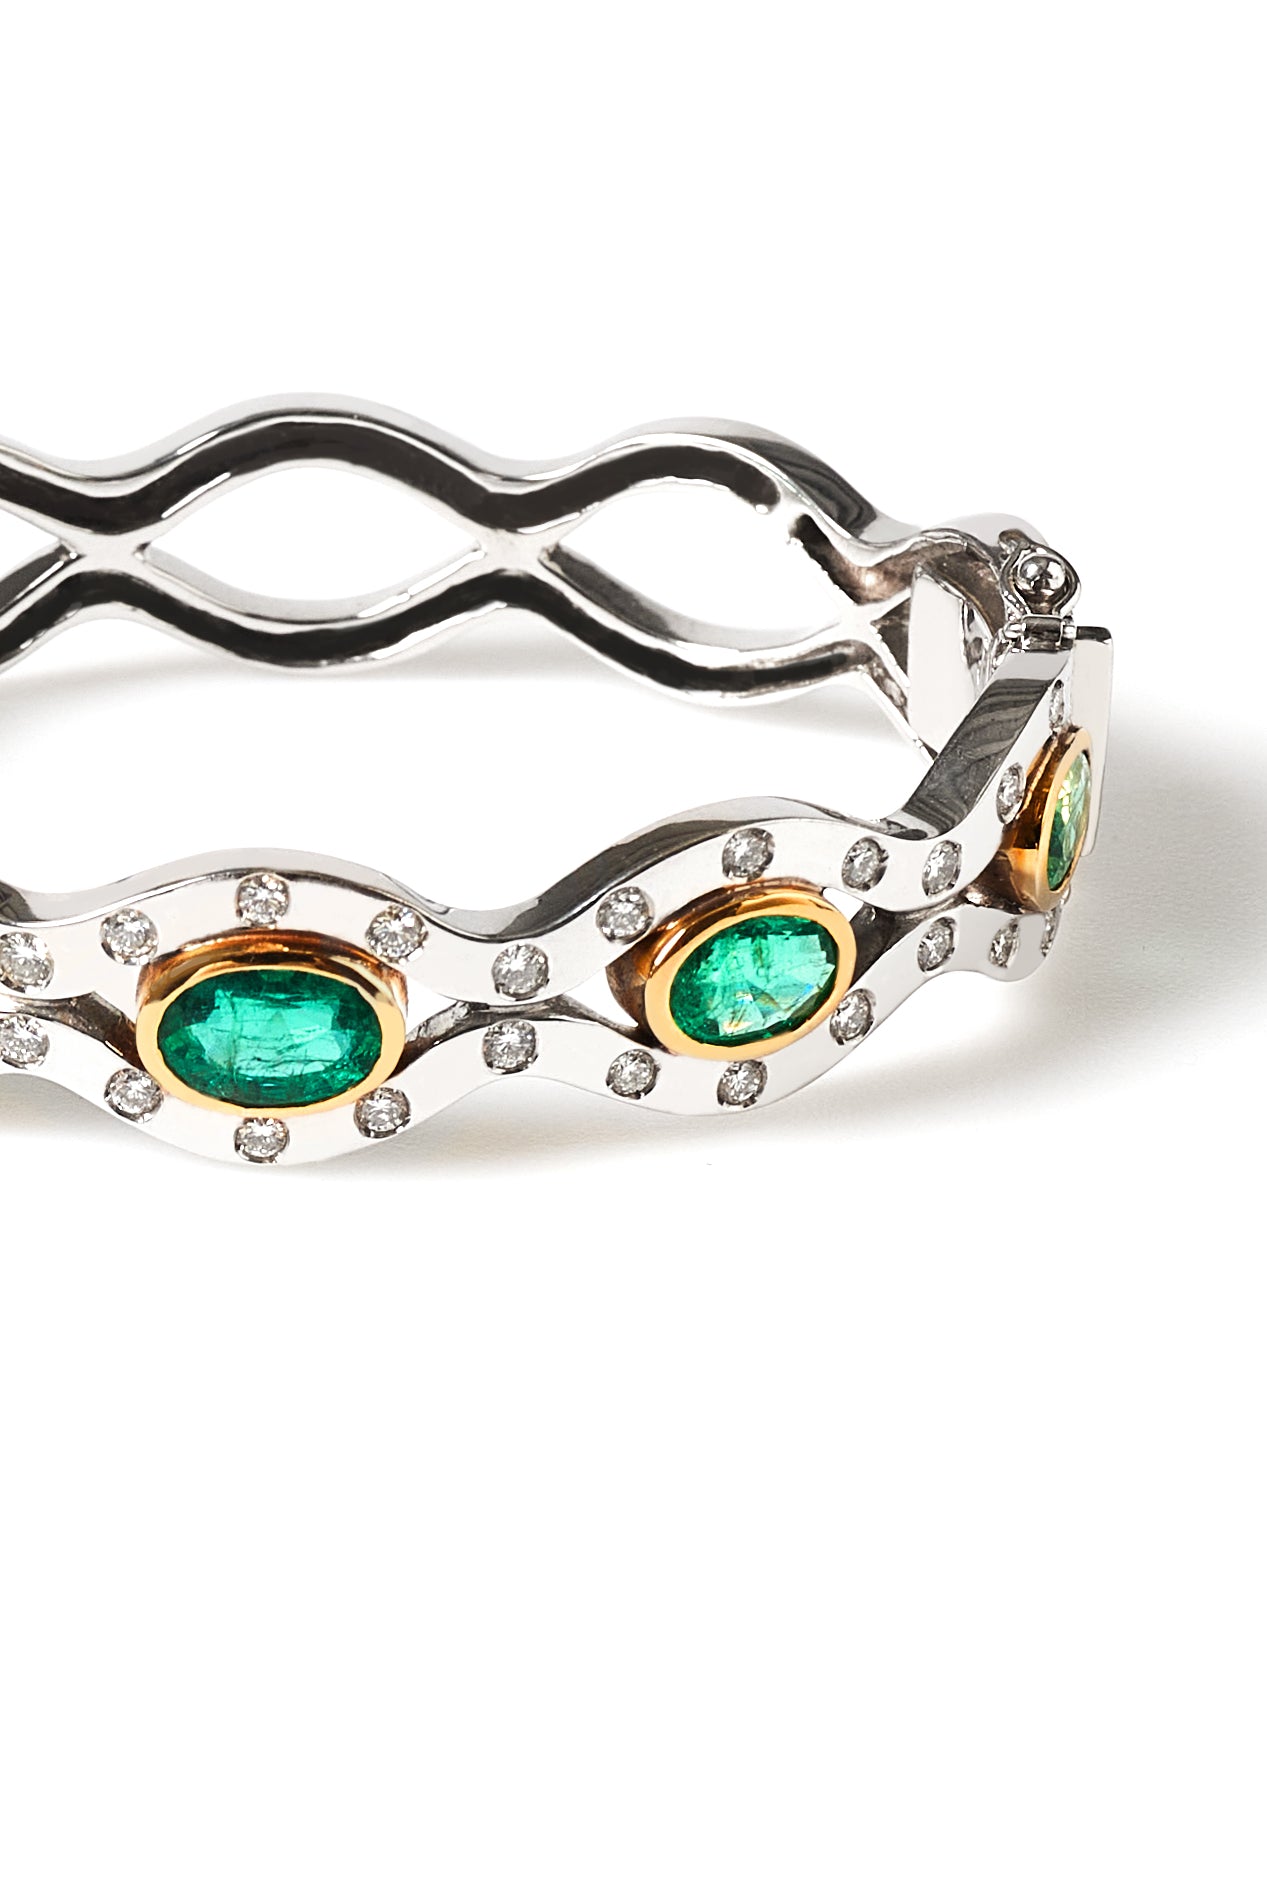 Renaissance Emerald bracelet